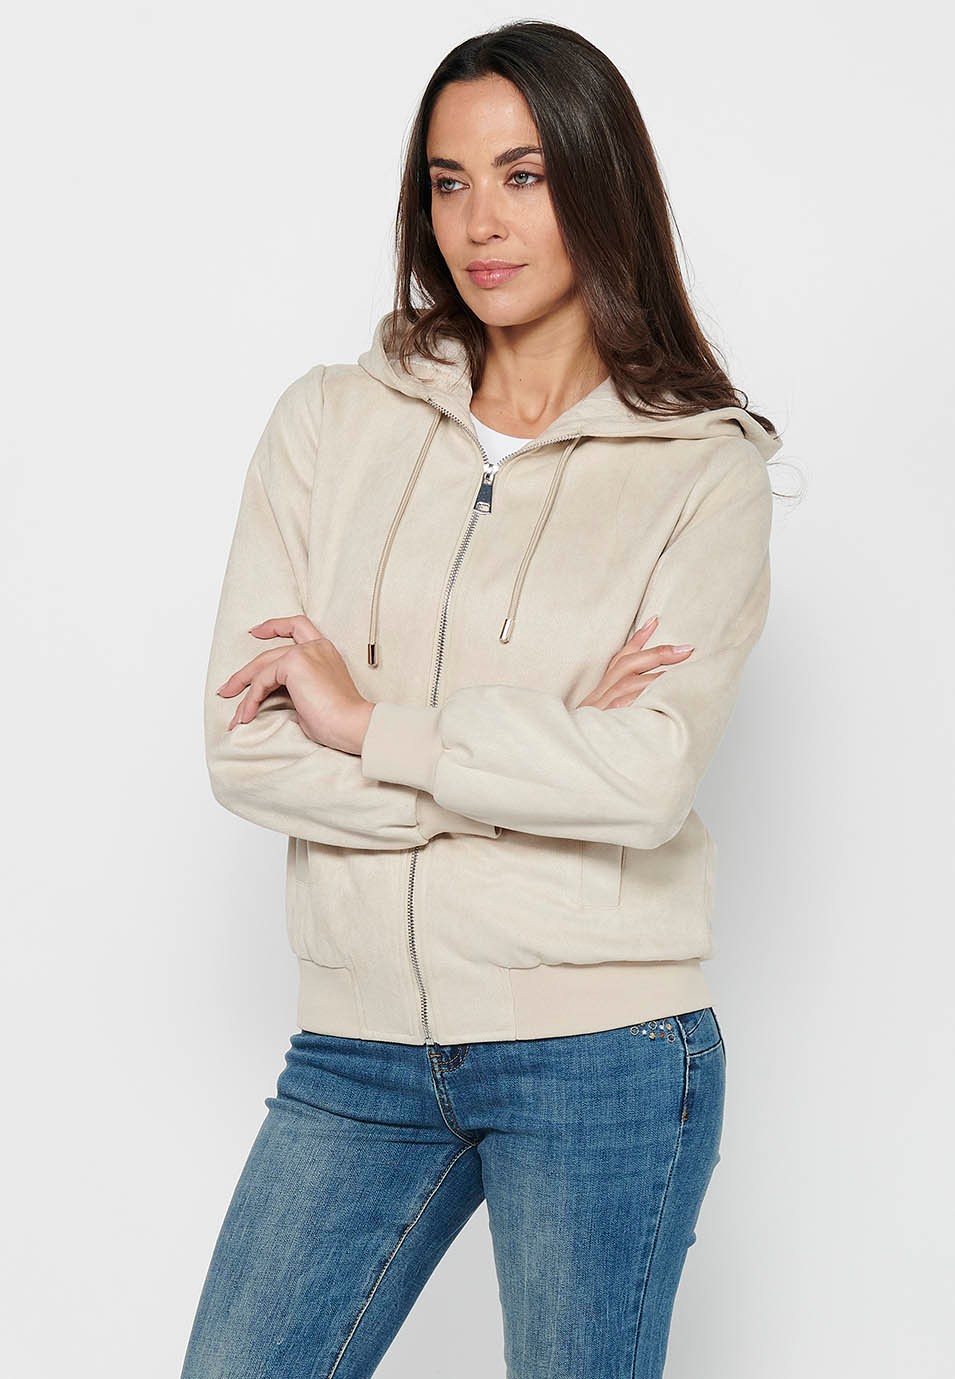 Women's Ecru Color Hooded Collar Long Sleeve Zip Front Closure Sweatshirt Jacket 7